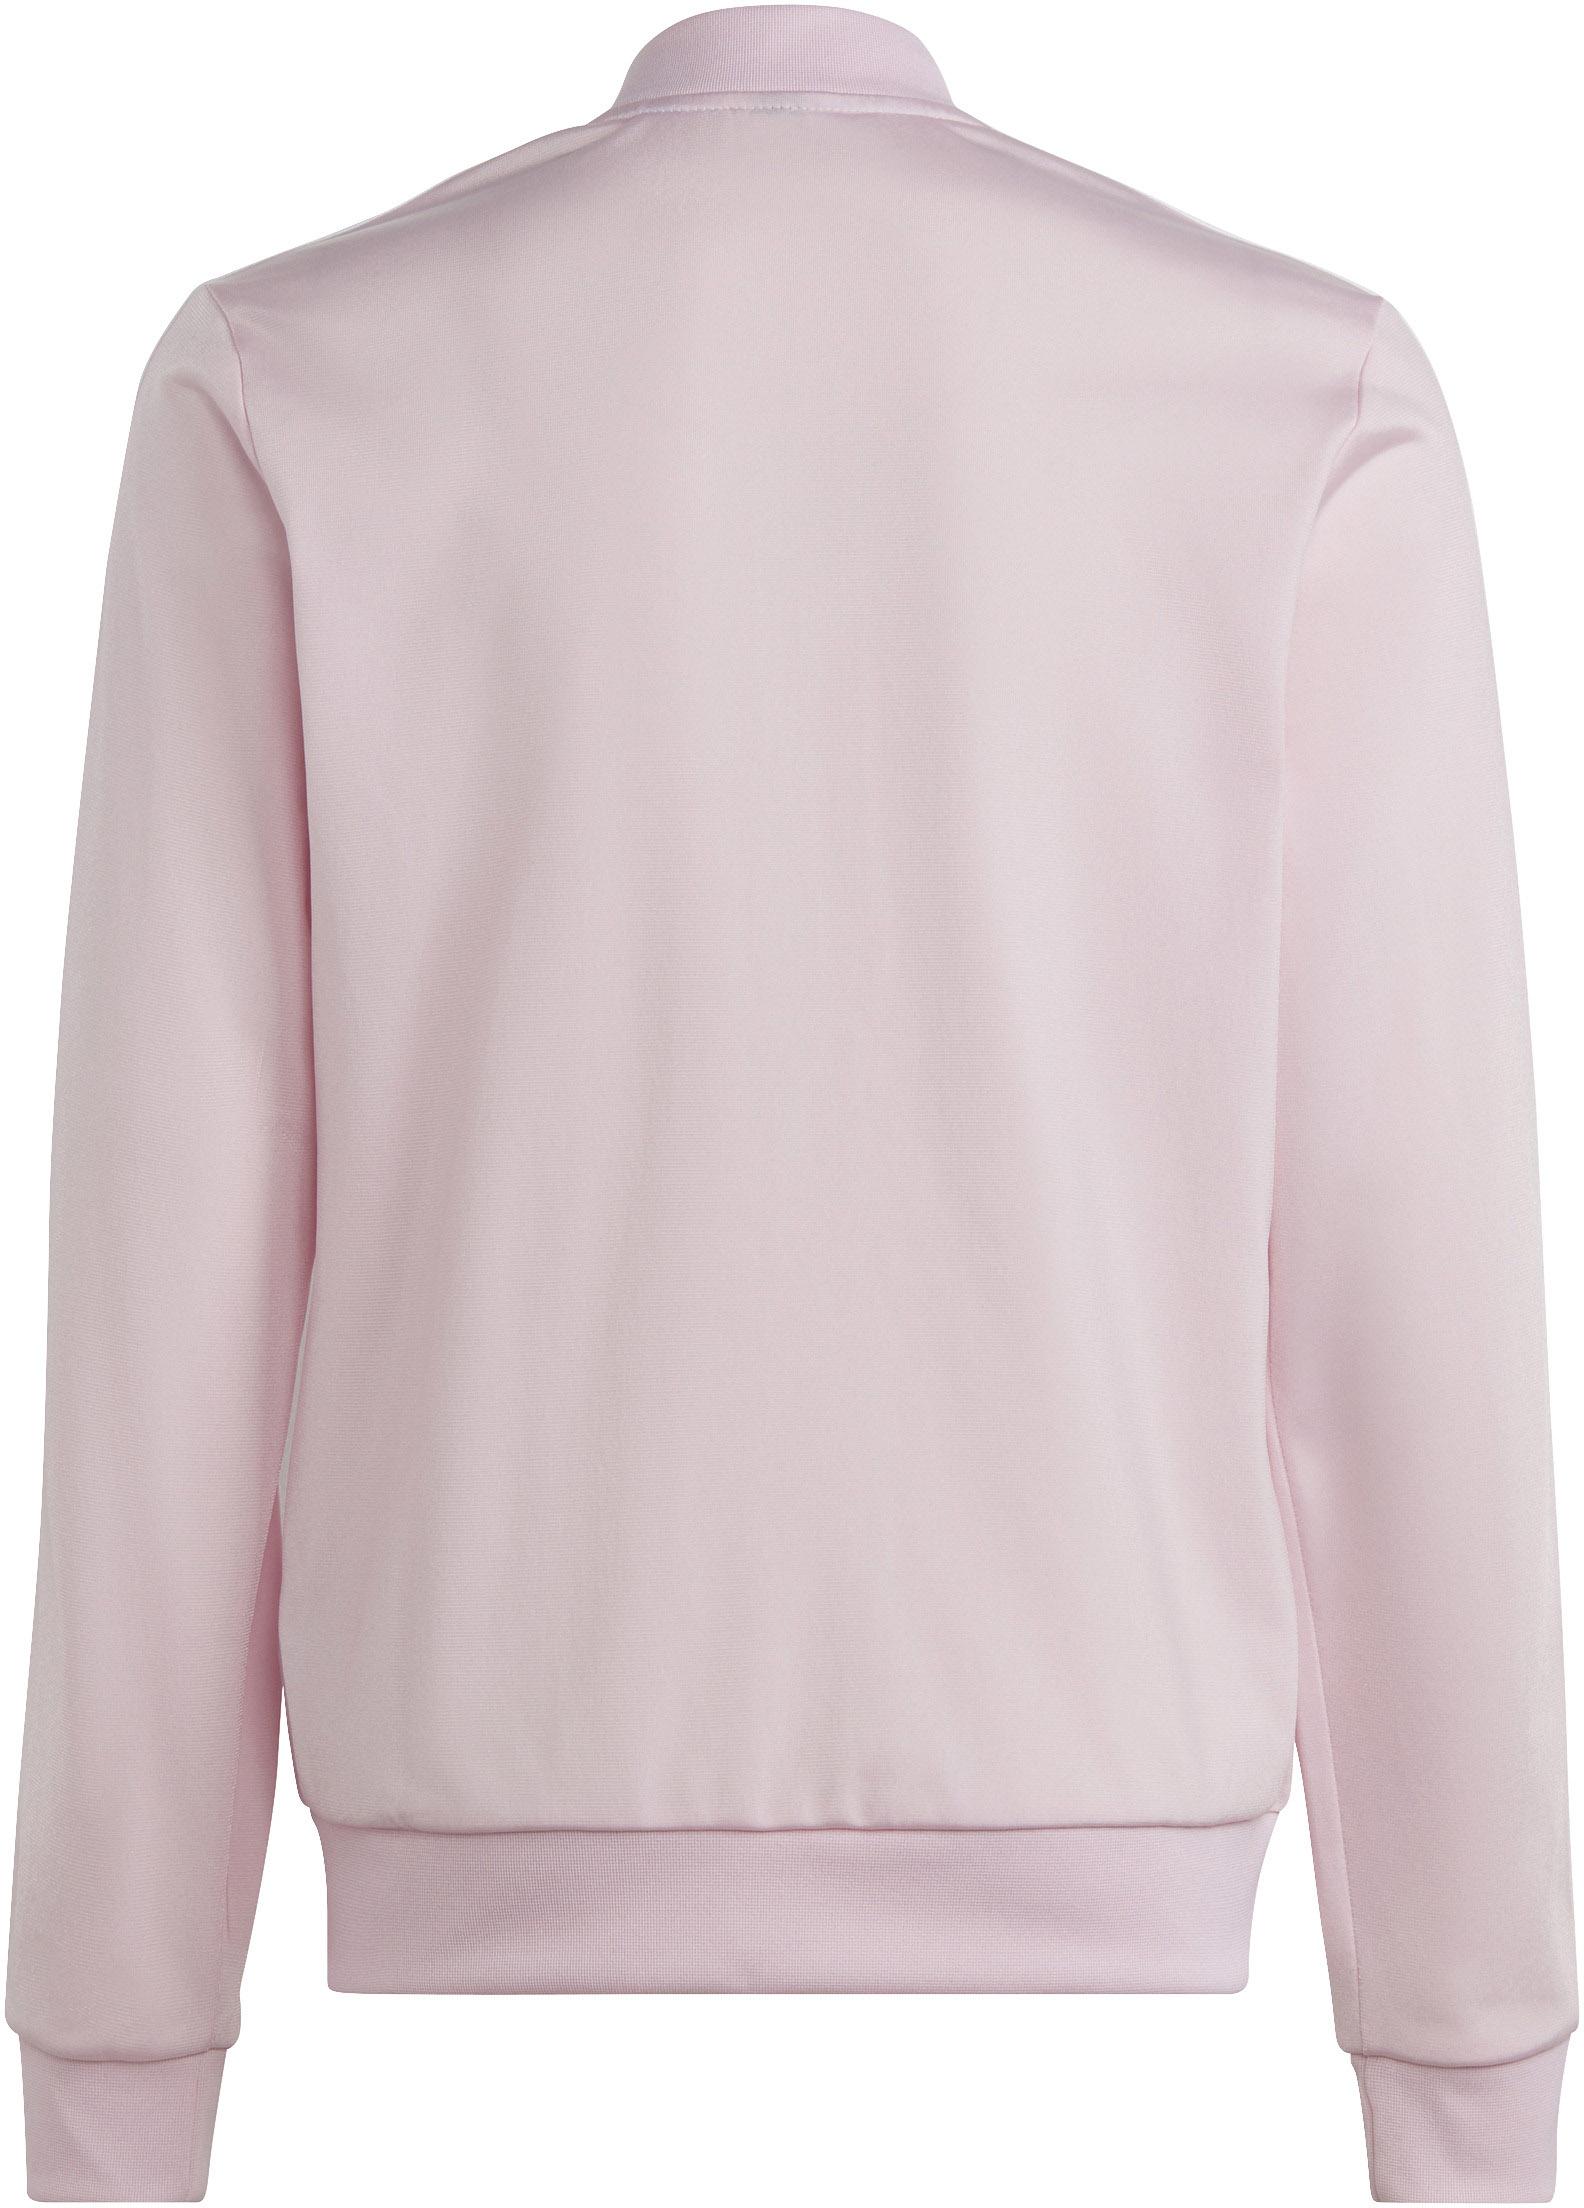 Adidas Trainingsanzug SportScheck Mädchen Online von im pink-semi lucid fuchsia-white clear Shop kaufen